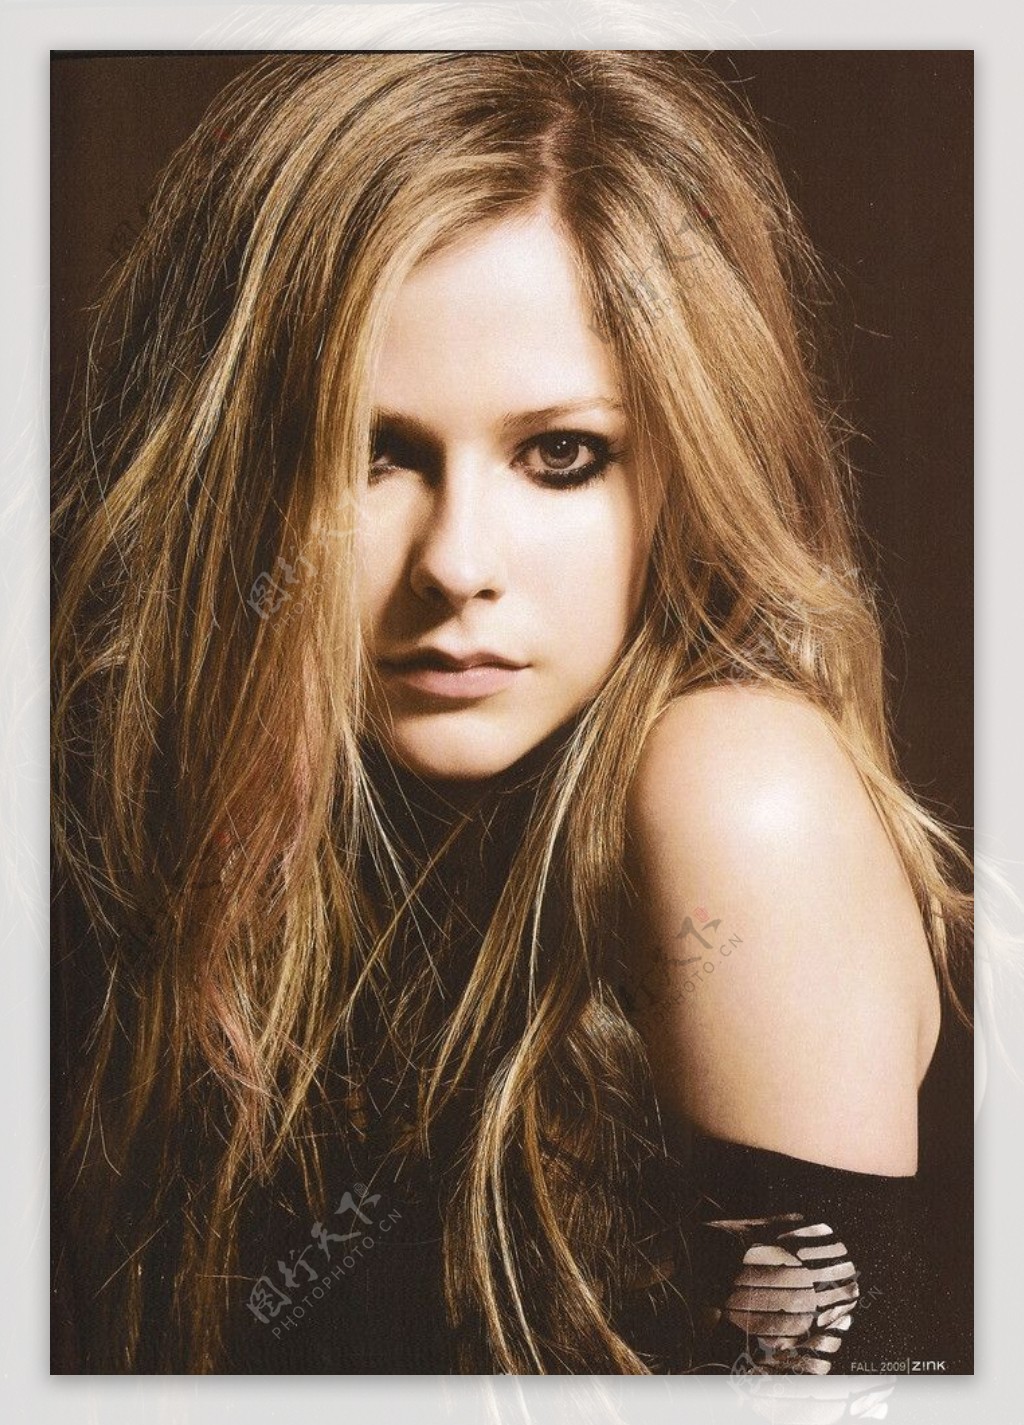 Avril Lavigne 艾薇儿写真海报-93 - 摇滚壁纸网